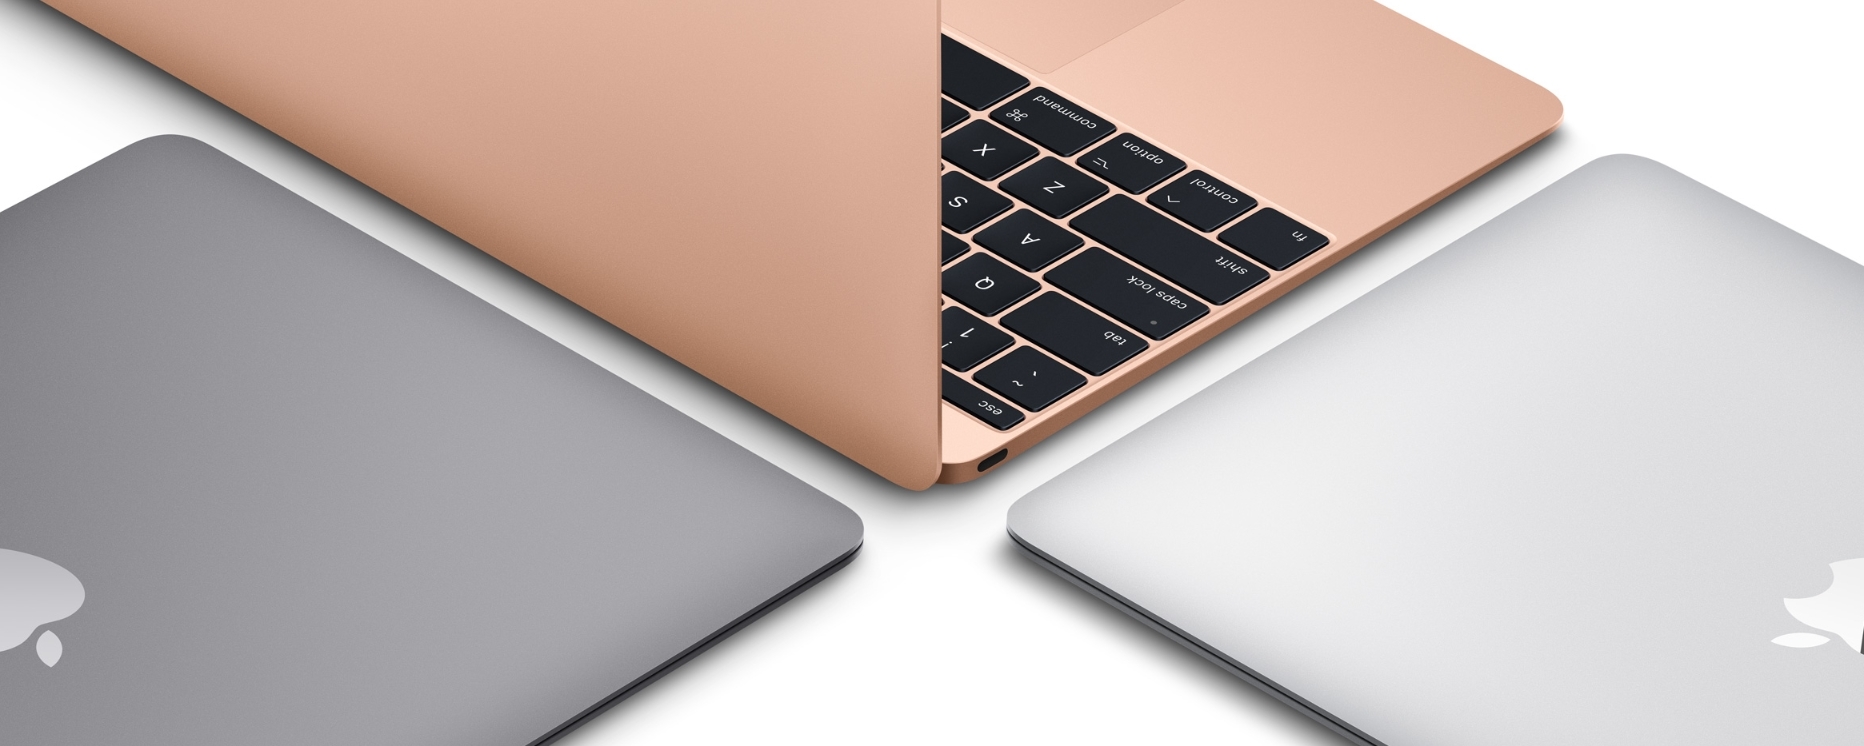 Imagem de: Microfone dos novos MacBooks é desligado quando tampa é fechada